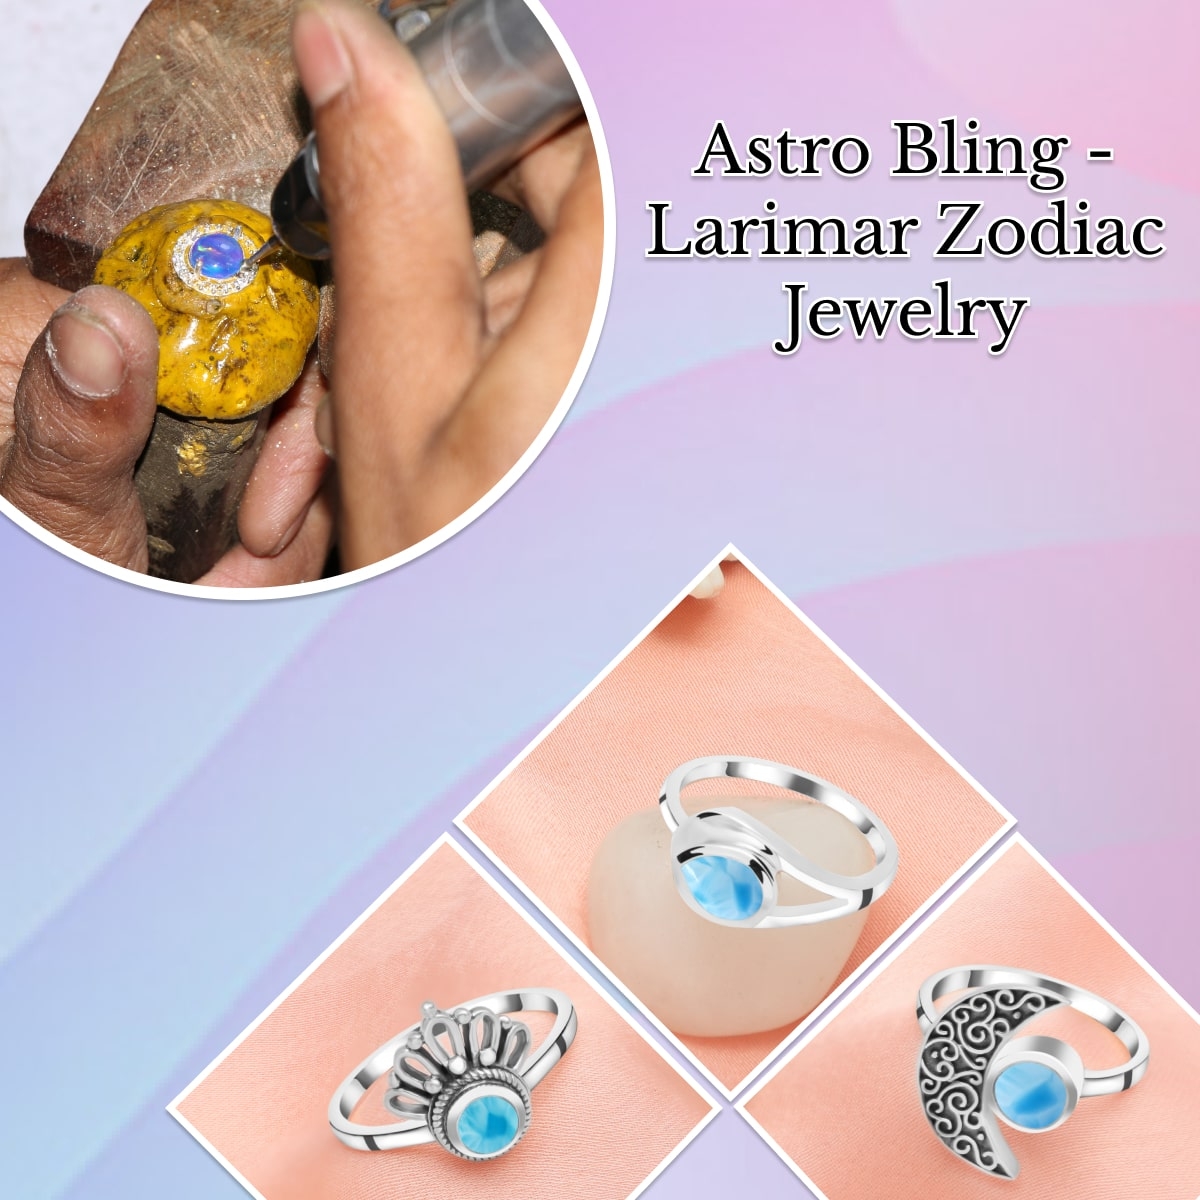 Zodiac Sign Jewelry with Larimar